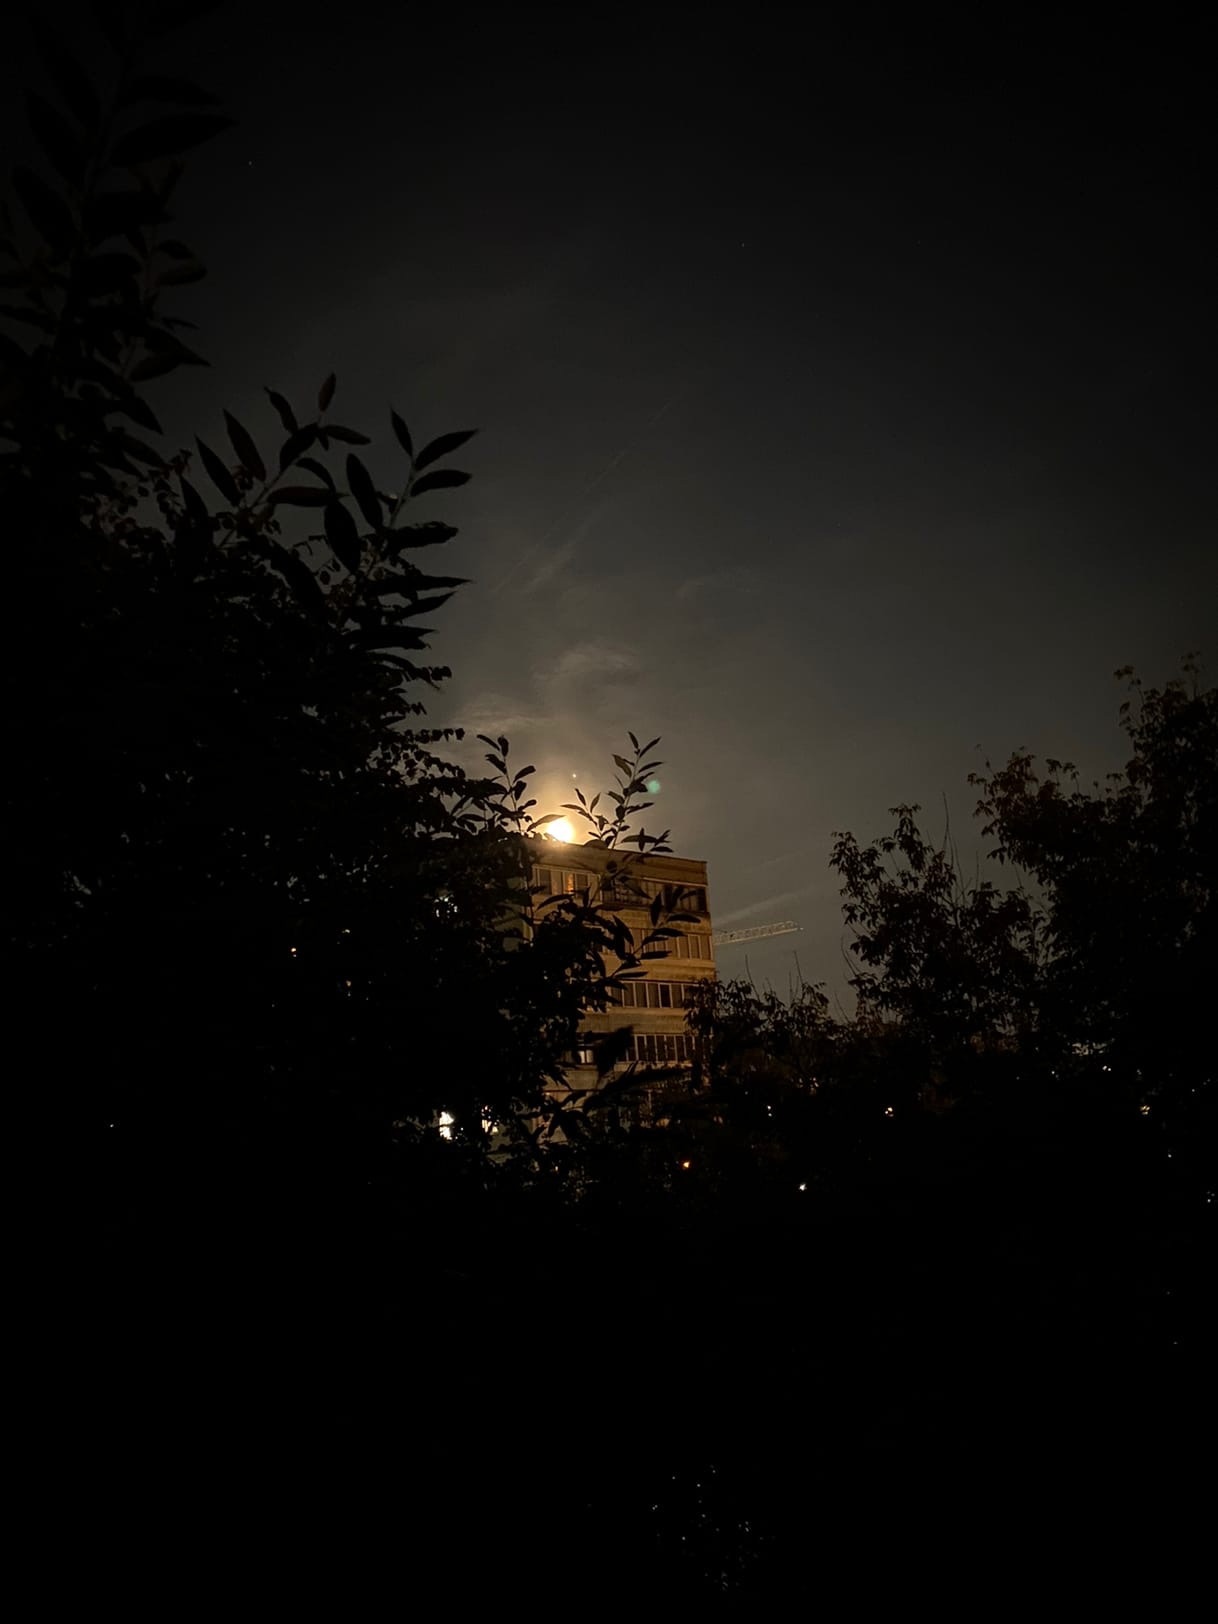 Жители Владимирской области заметили в небе лунное гало. Необычное свечение было отмечено накануне. О чём оно говорит? Наши предки считали, что погода изменится. Причём не в лучшую сторону. 